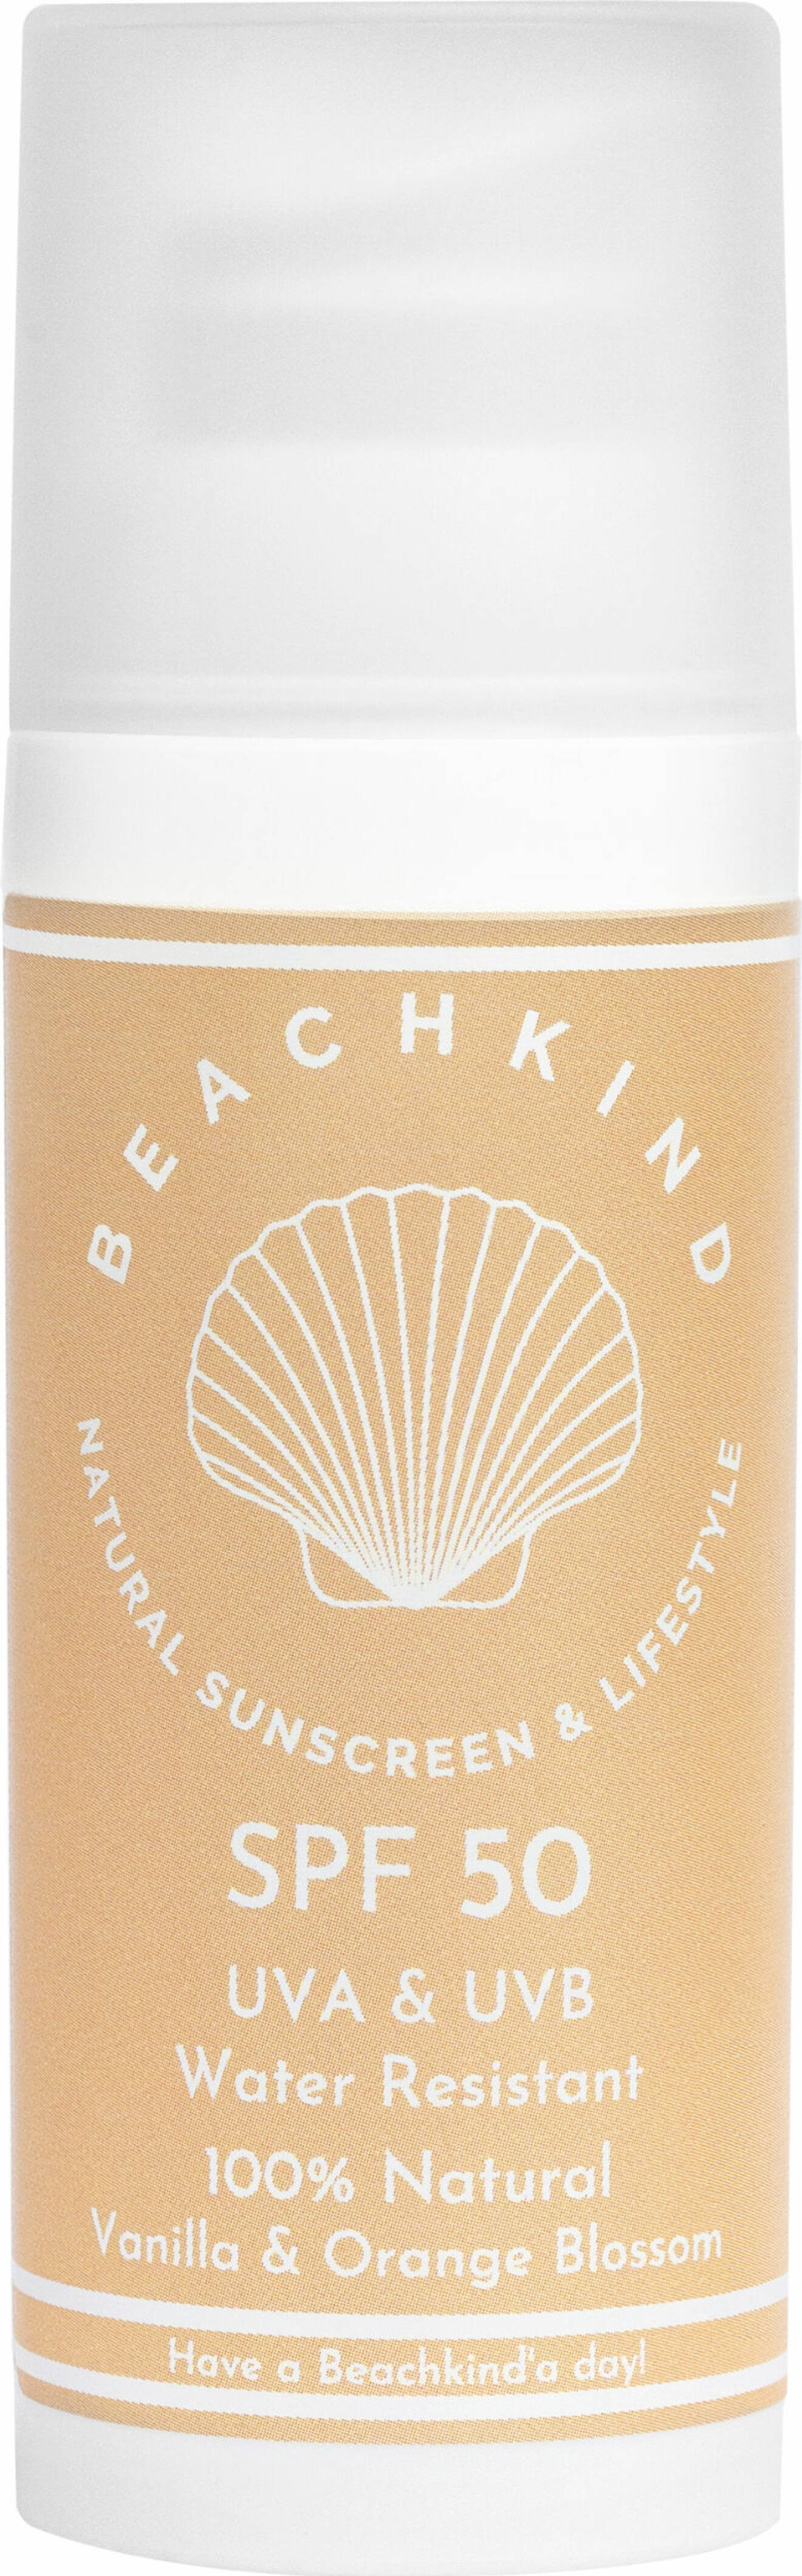 Beachkind Natural Sunscreen SPF50, UVA, UVB